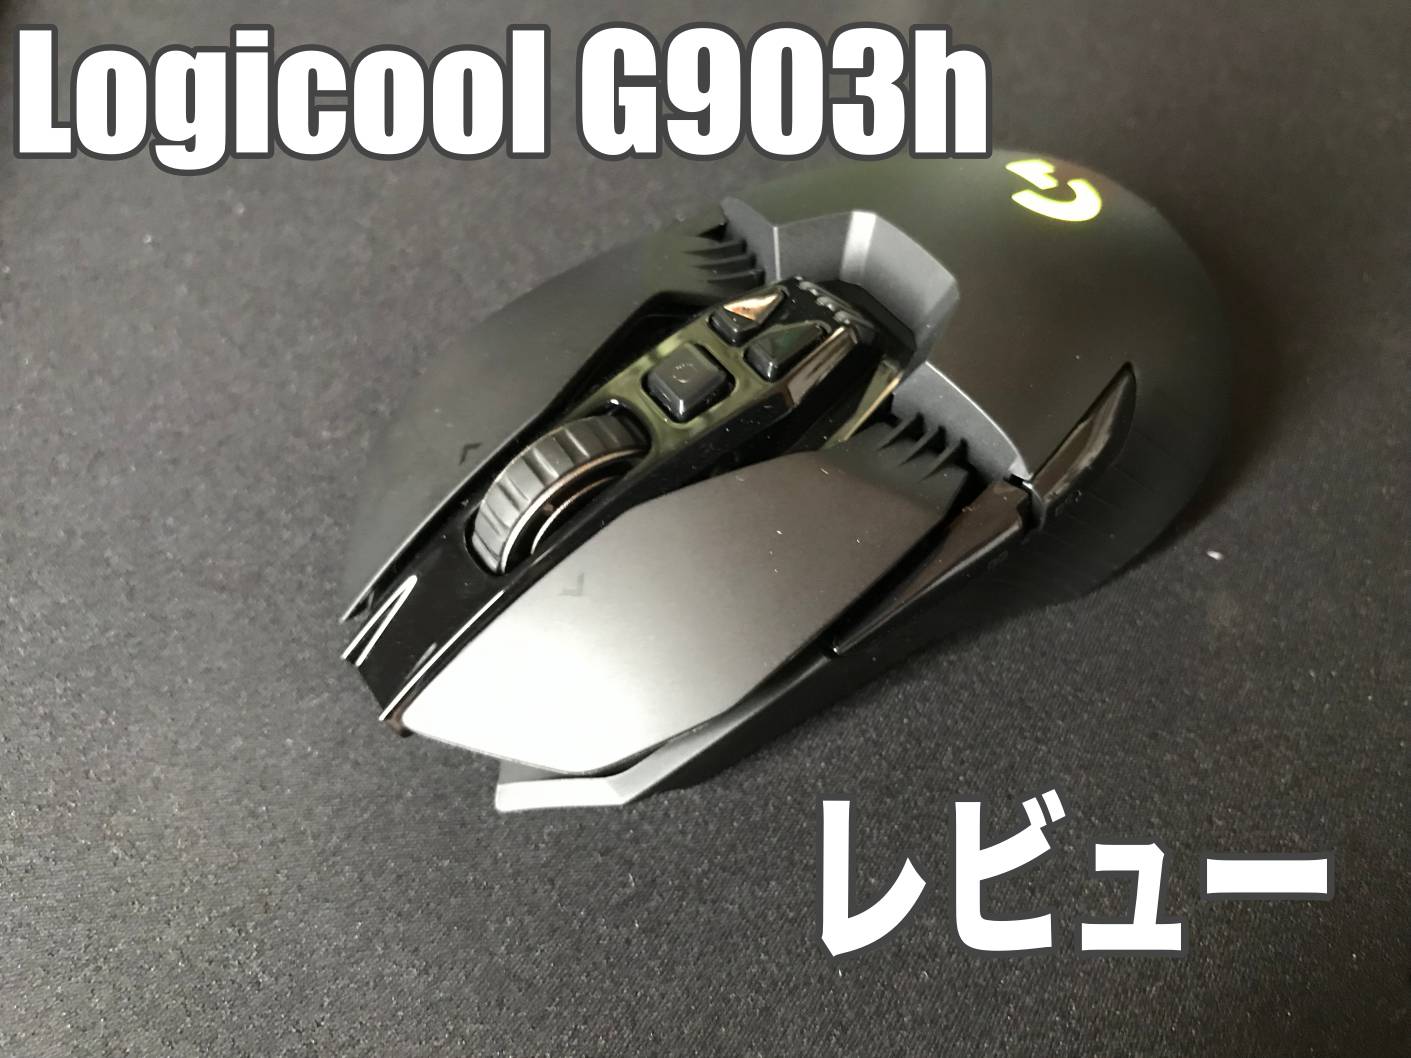 G903hレビュー:ロジクールHERO16Kセンサーを搭載したハイエンド 